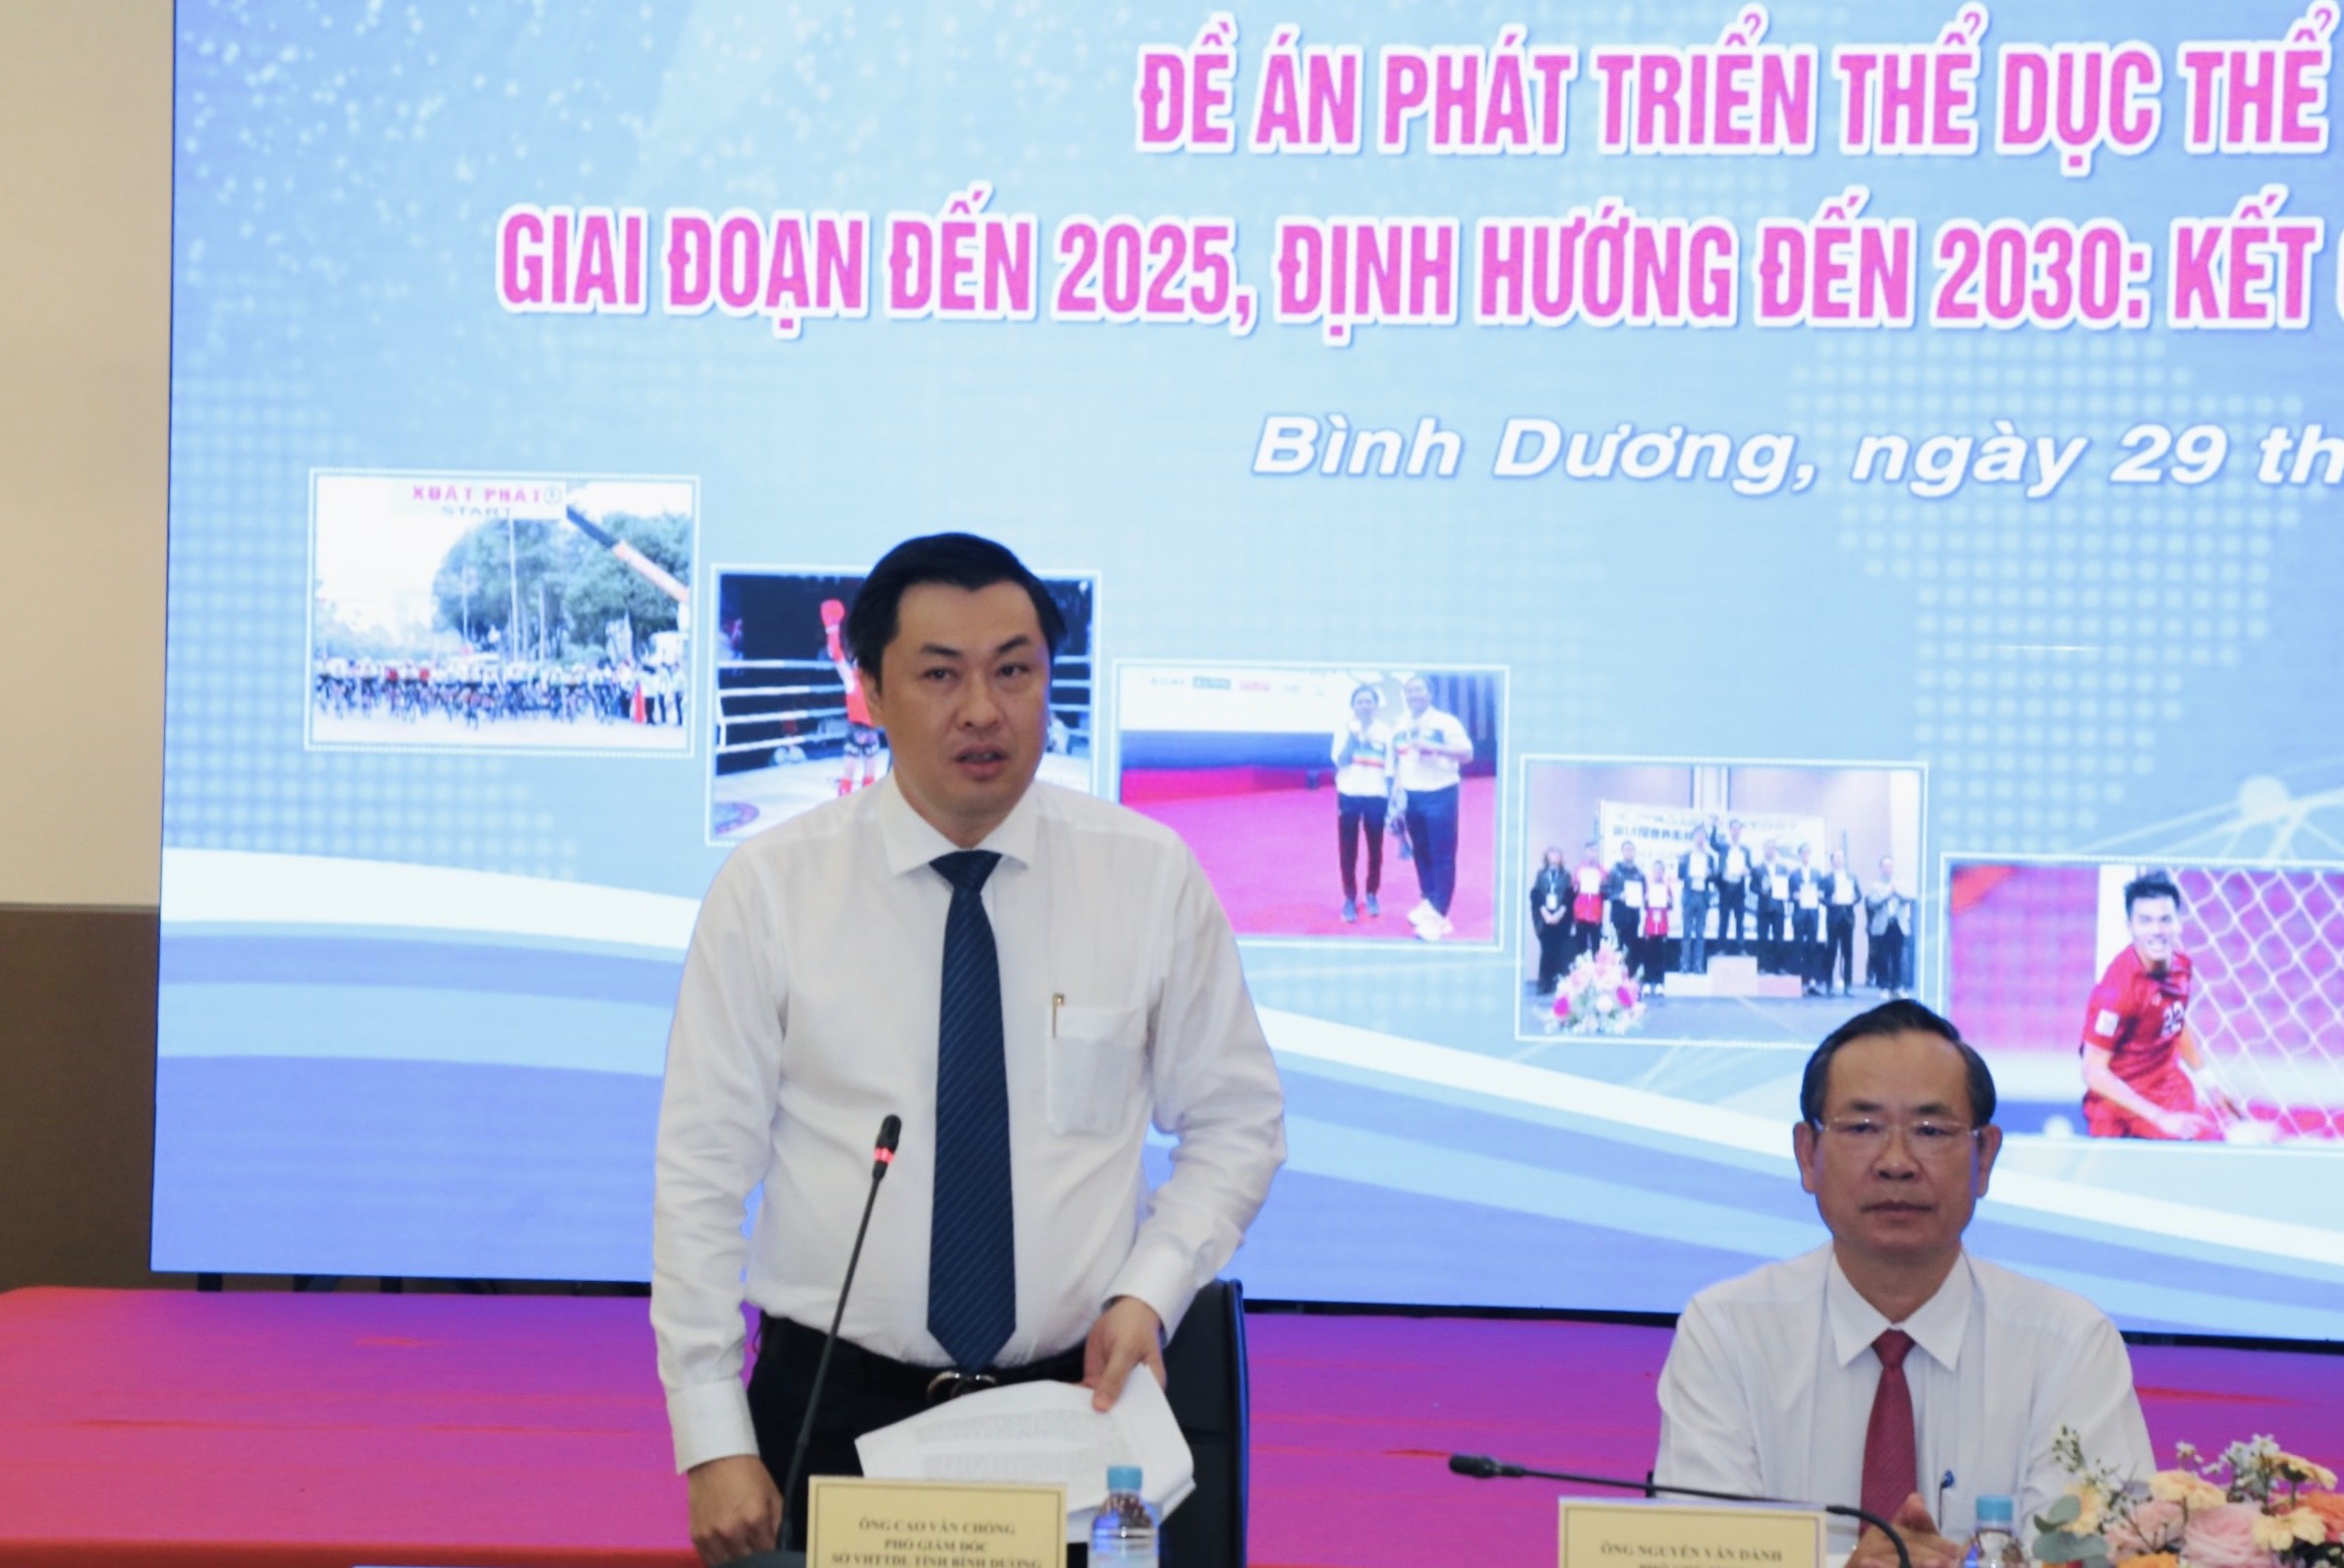 TS Cao Văn Chóng thay mặt BTC toạ đàm tiếp nhận các ý kiến đóng góp của các nhà khoa học, nhà quản lý tại toạ đàm